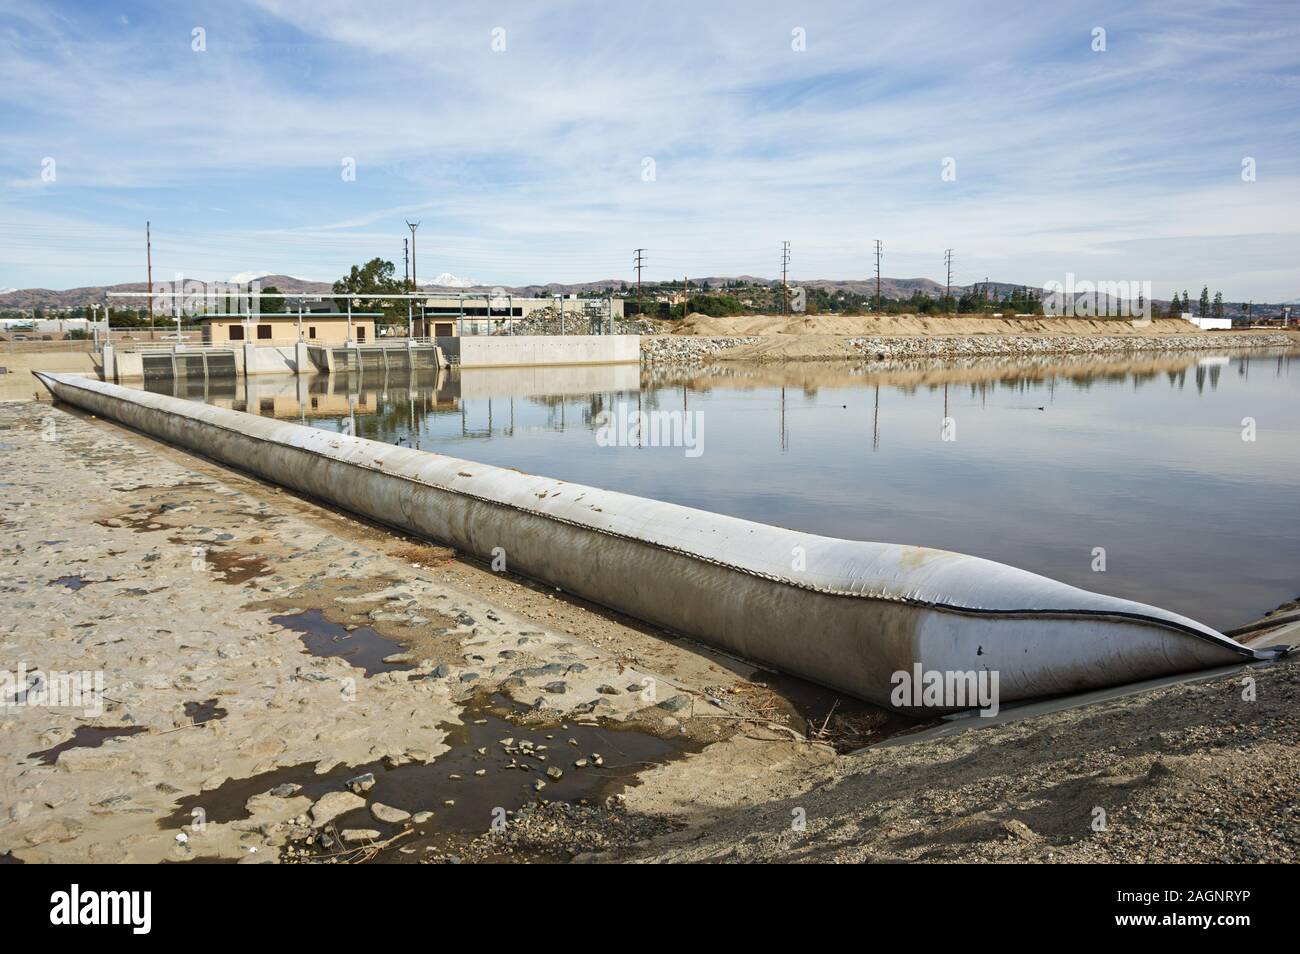 Inflables de presa en el río de Santa Ana en el condado de Orange utilizado para almacenar agua para la infiltración de aguas subterráneas. Foto de stock